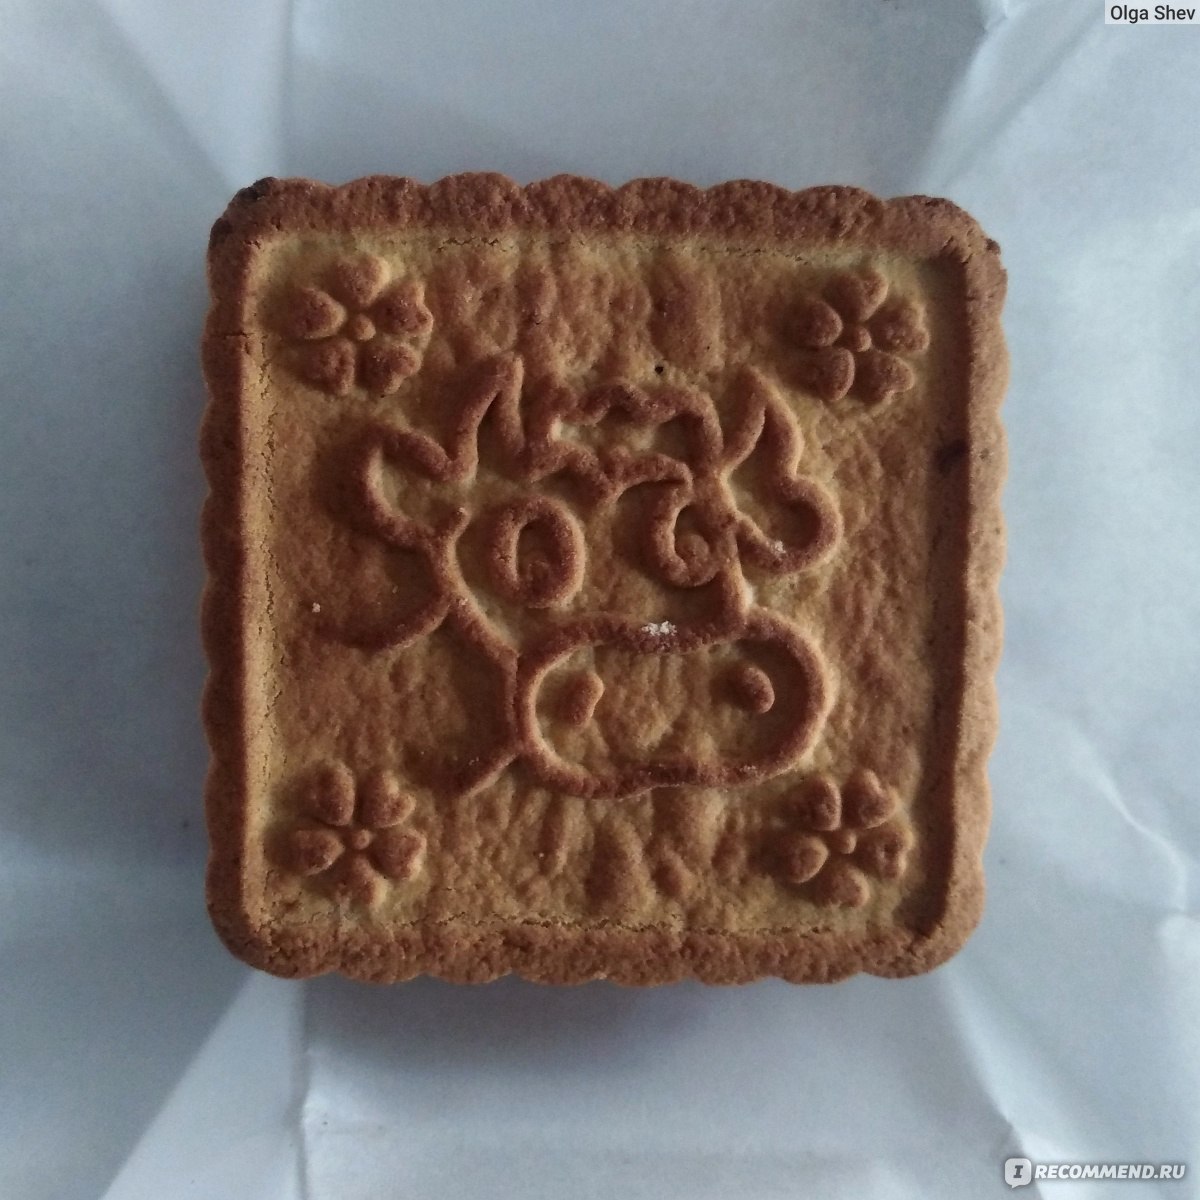 сормовское печенье фото